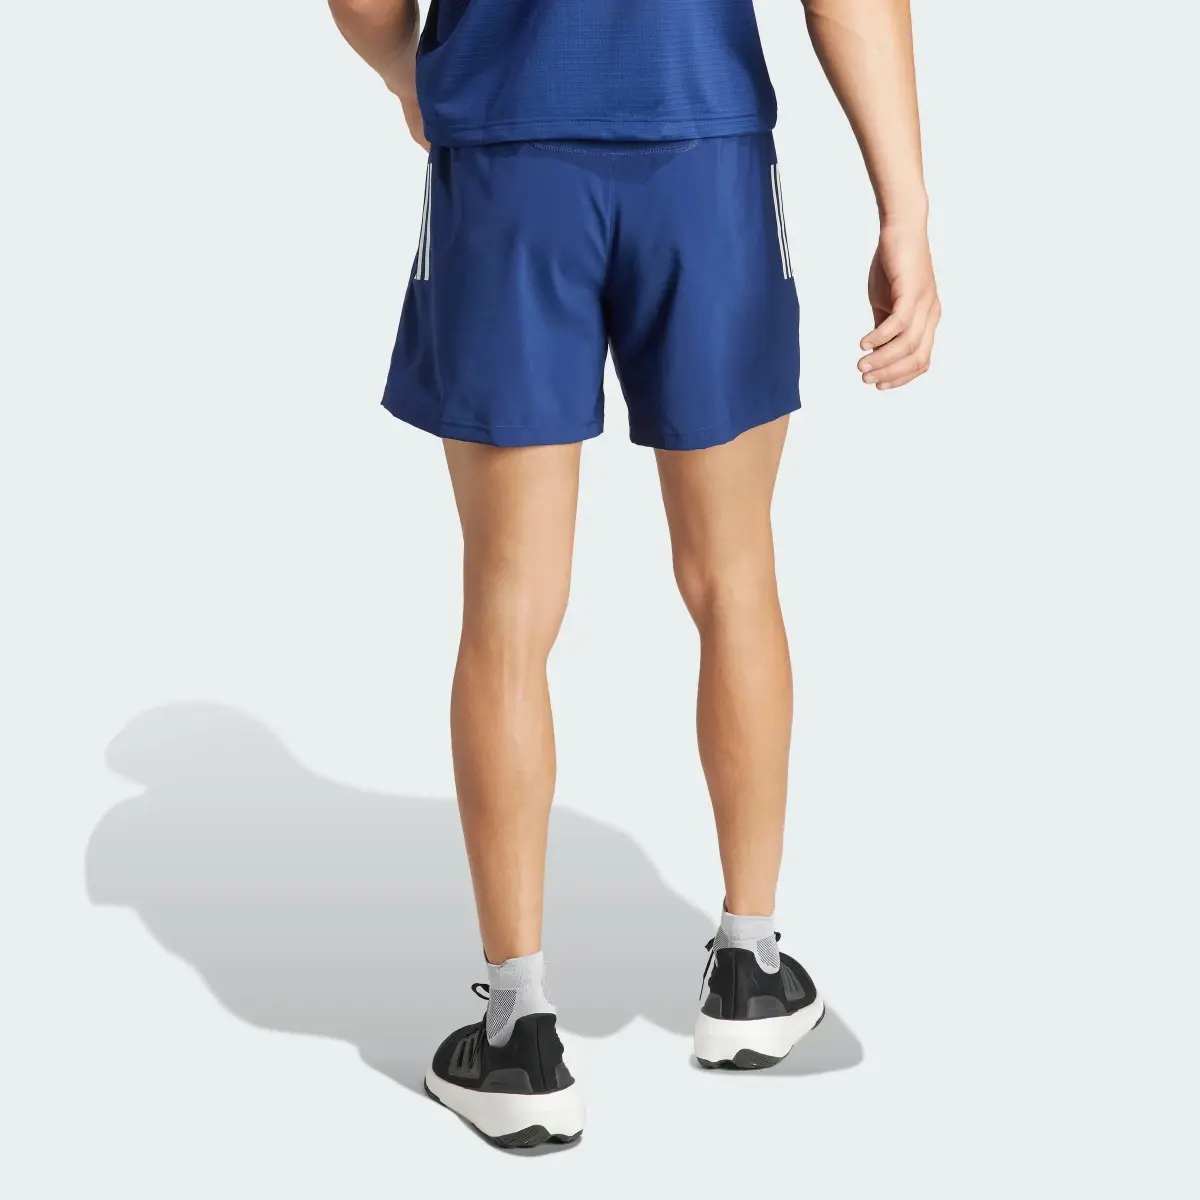 Adidas Own The Run Shorts. 2